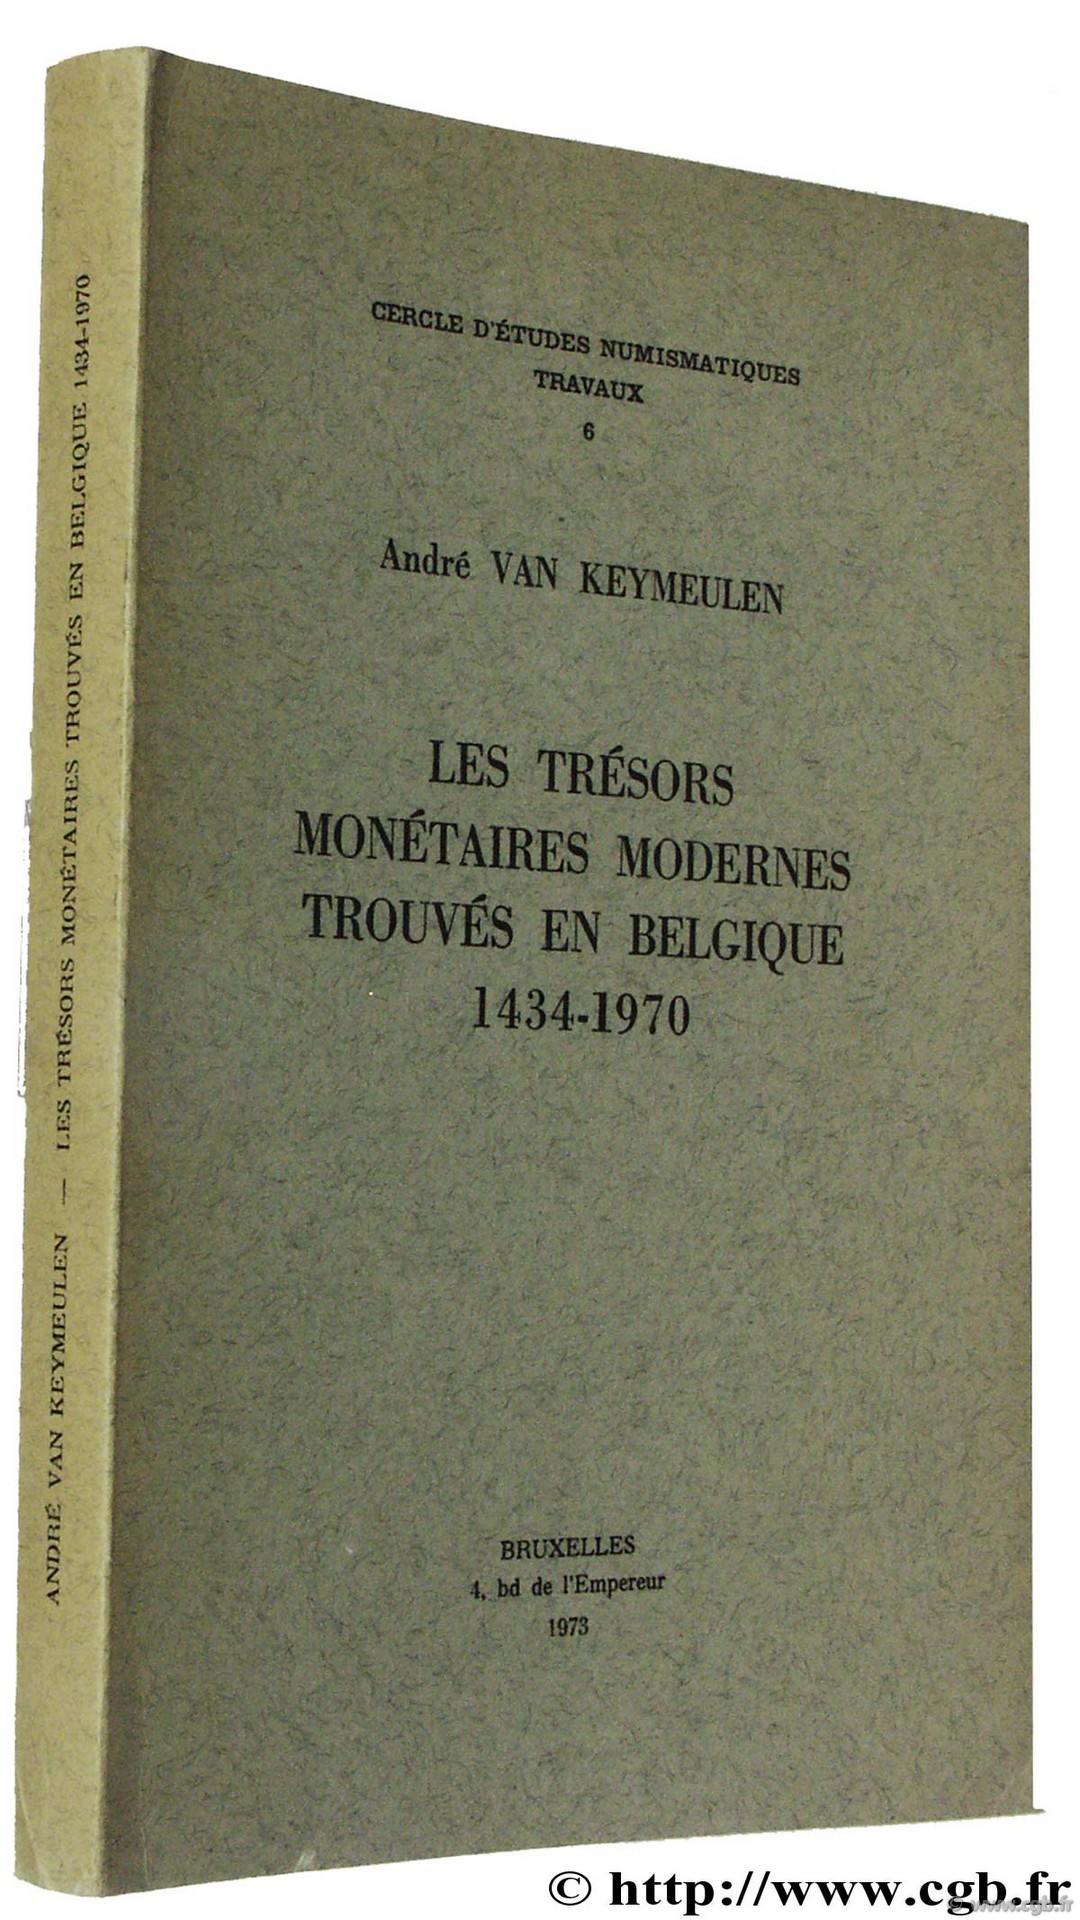 Les trésors monétaires modernes trouvés en Belgique (1434-1970), Cercle d Études Numismatiques 6 VAN KEYMEULEN A.